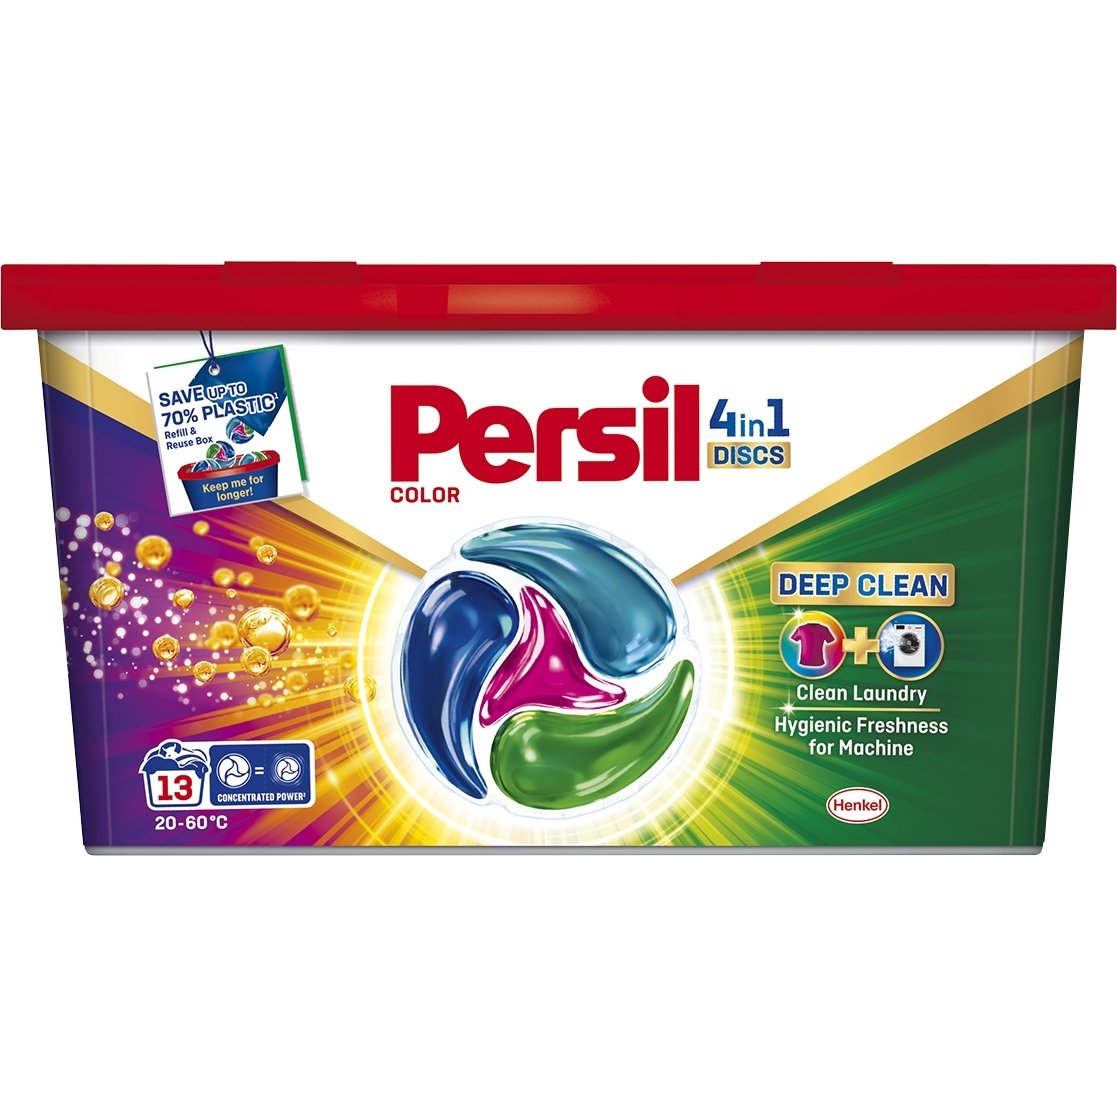 Фото - Пральний порошок Persil Капсули  Color 4in1 Discs Deep Clean 13 циклів прання 